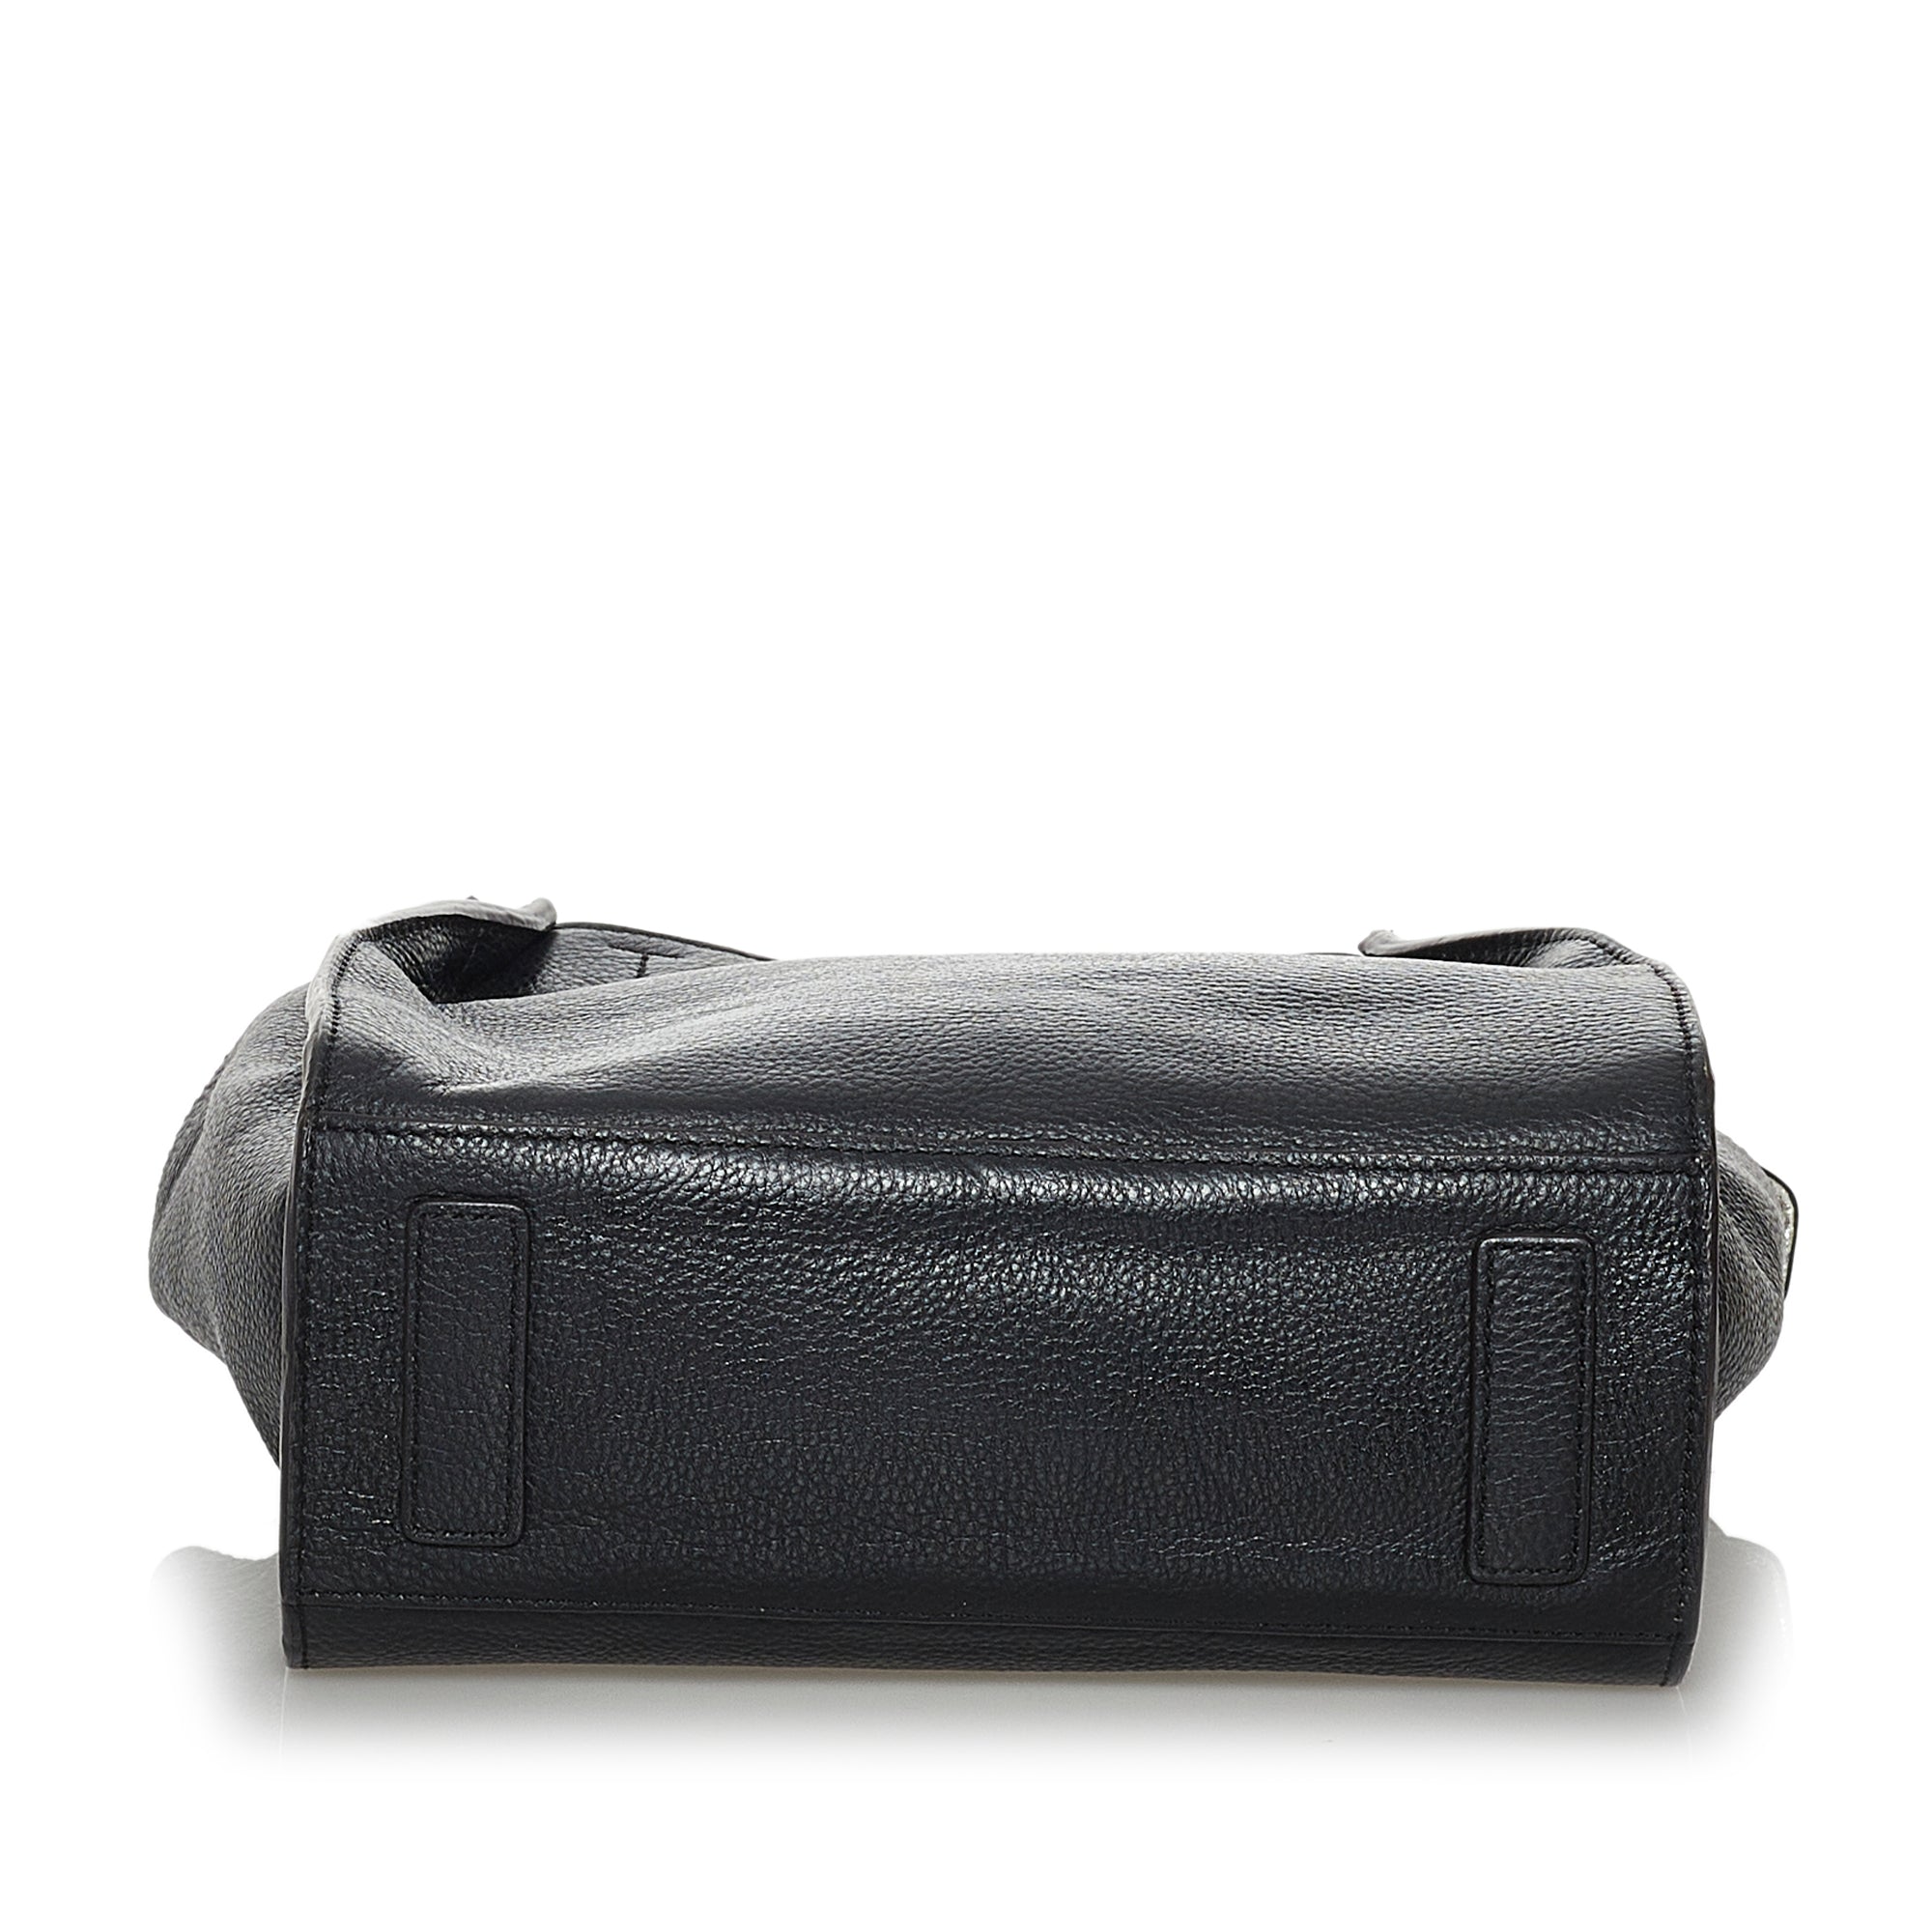 Black MCM Leather Satchel Bag – Designer Revival